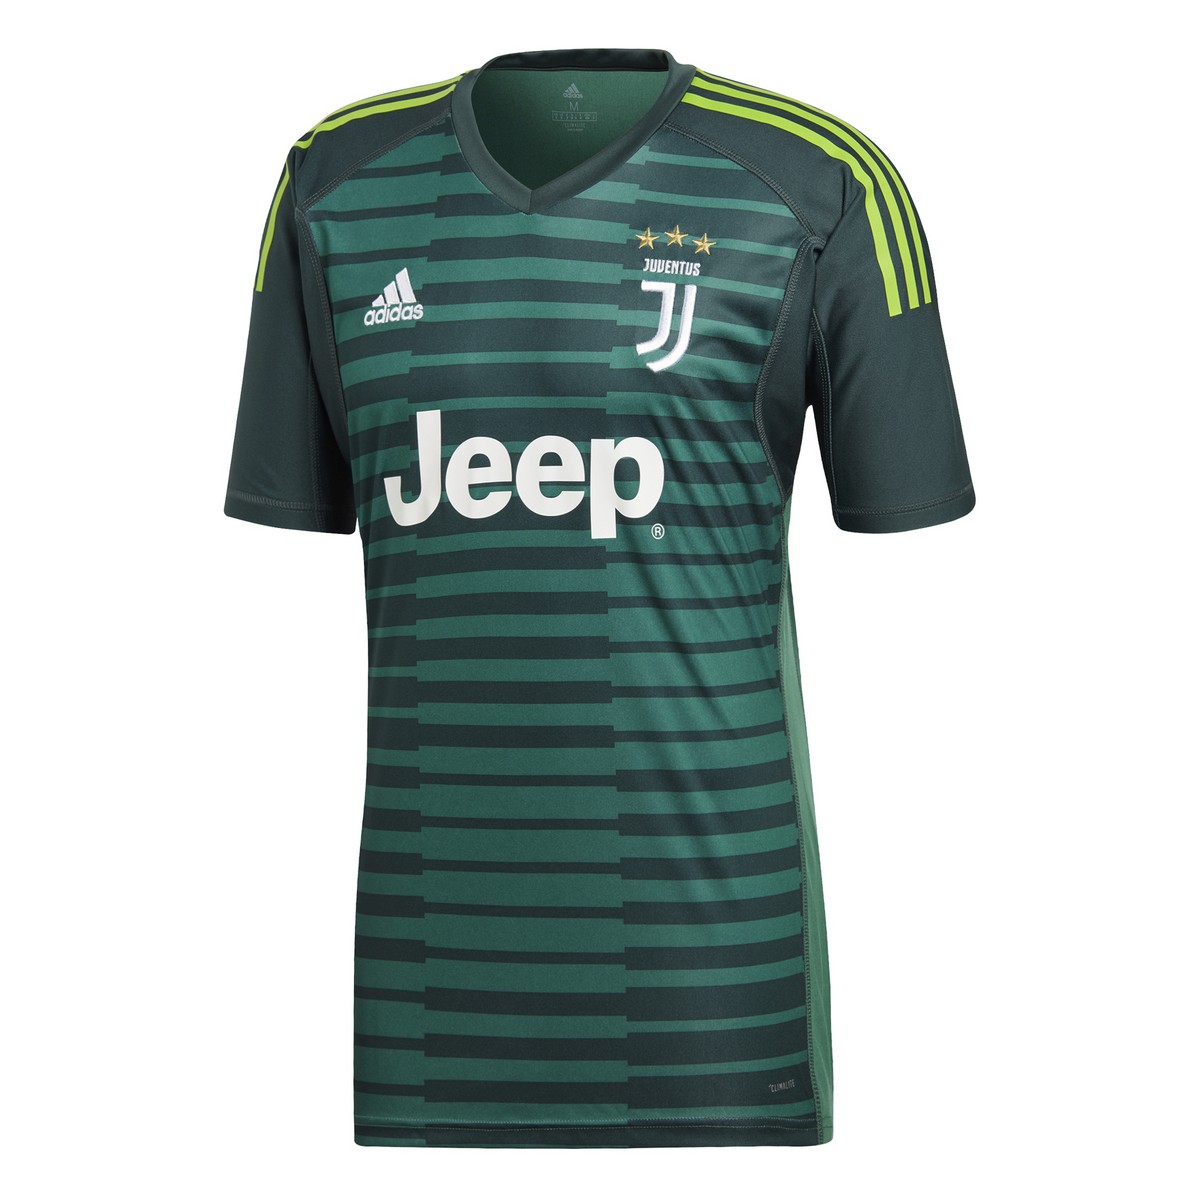 Juventus goalkeeper shirt green 2018/19 